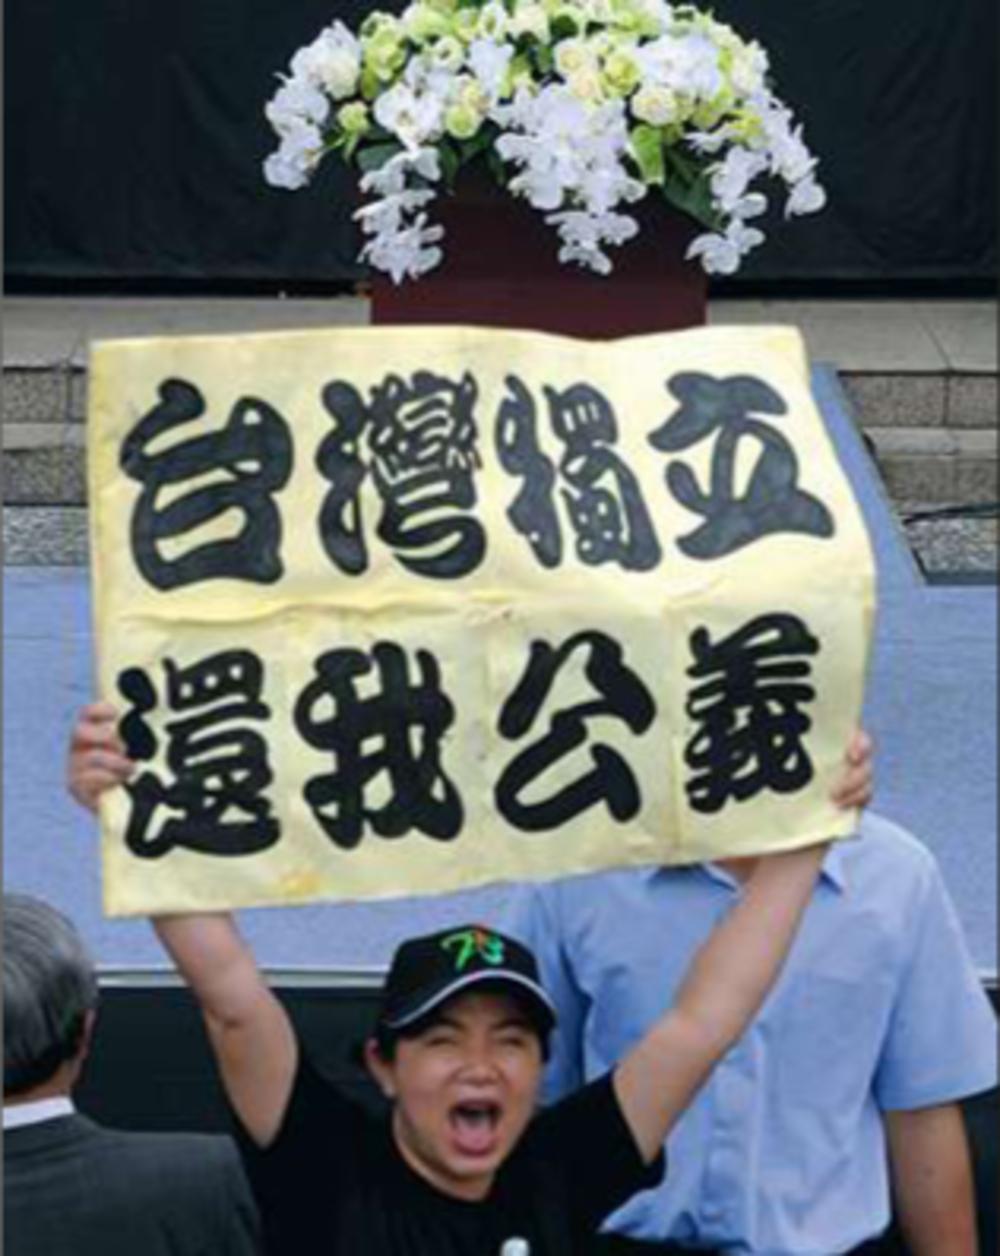 1947 - GistingOpschrift van het spandoek : 'Taiwan onafhankelijk - herstel de gerechtigheid'